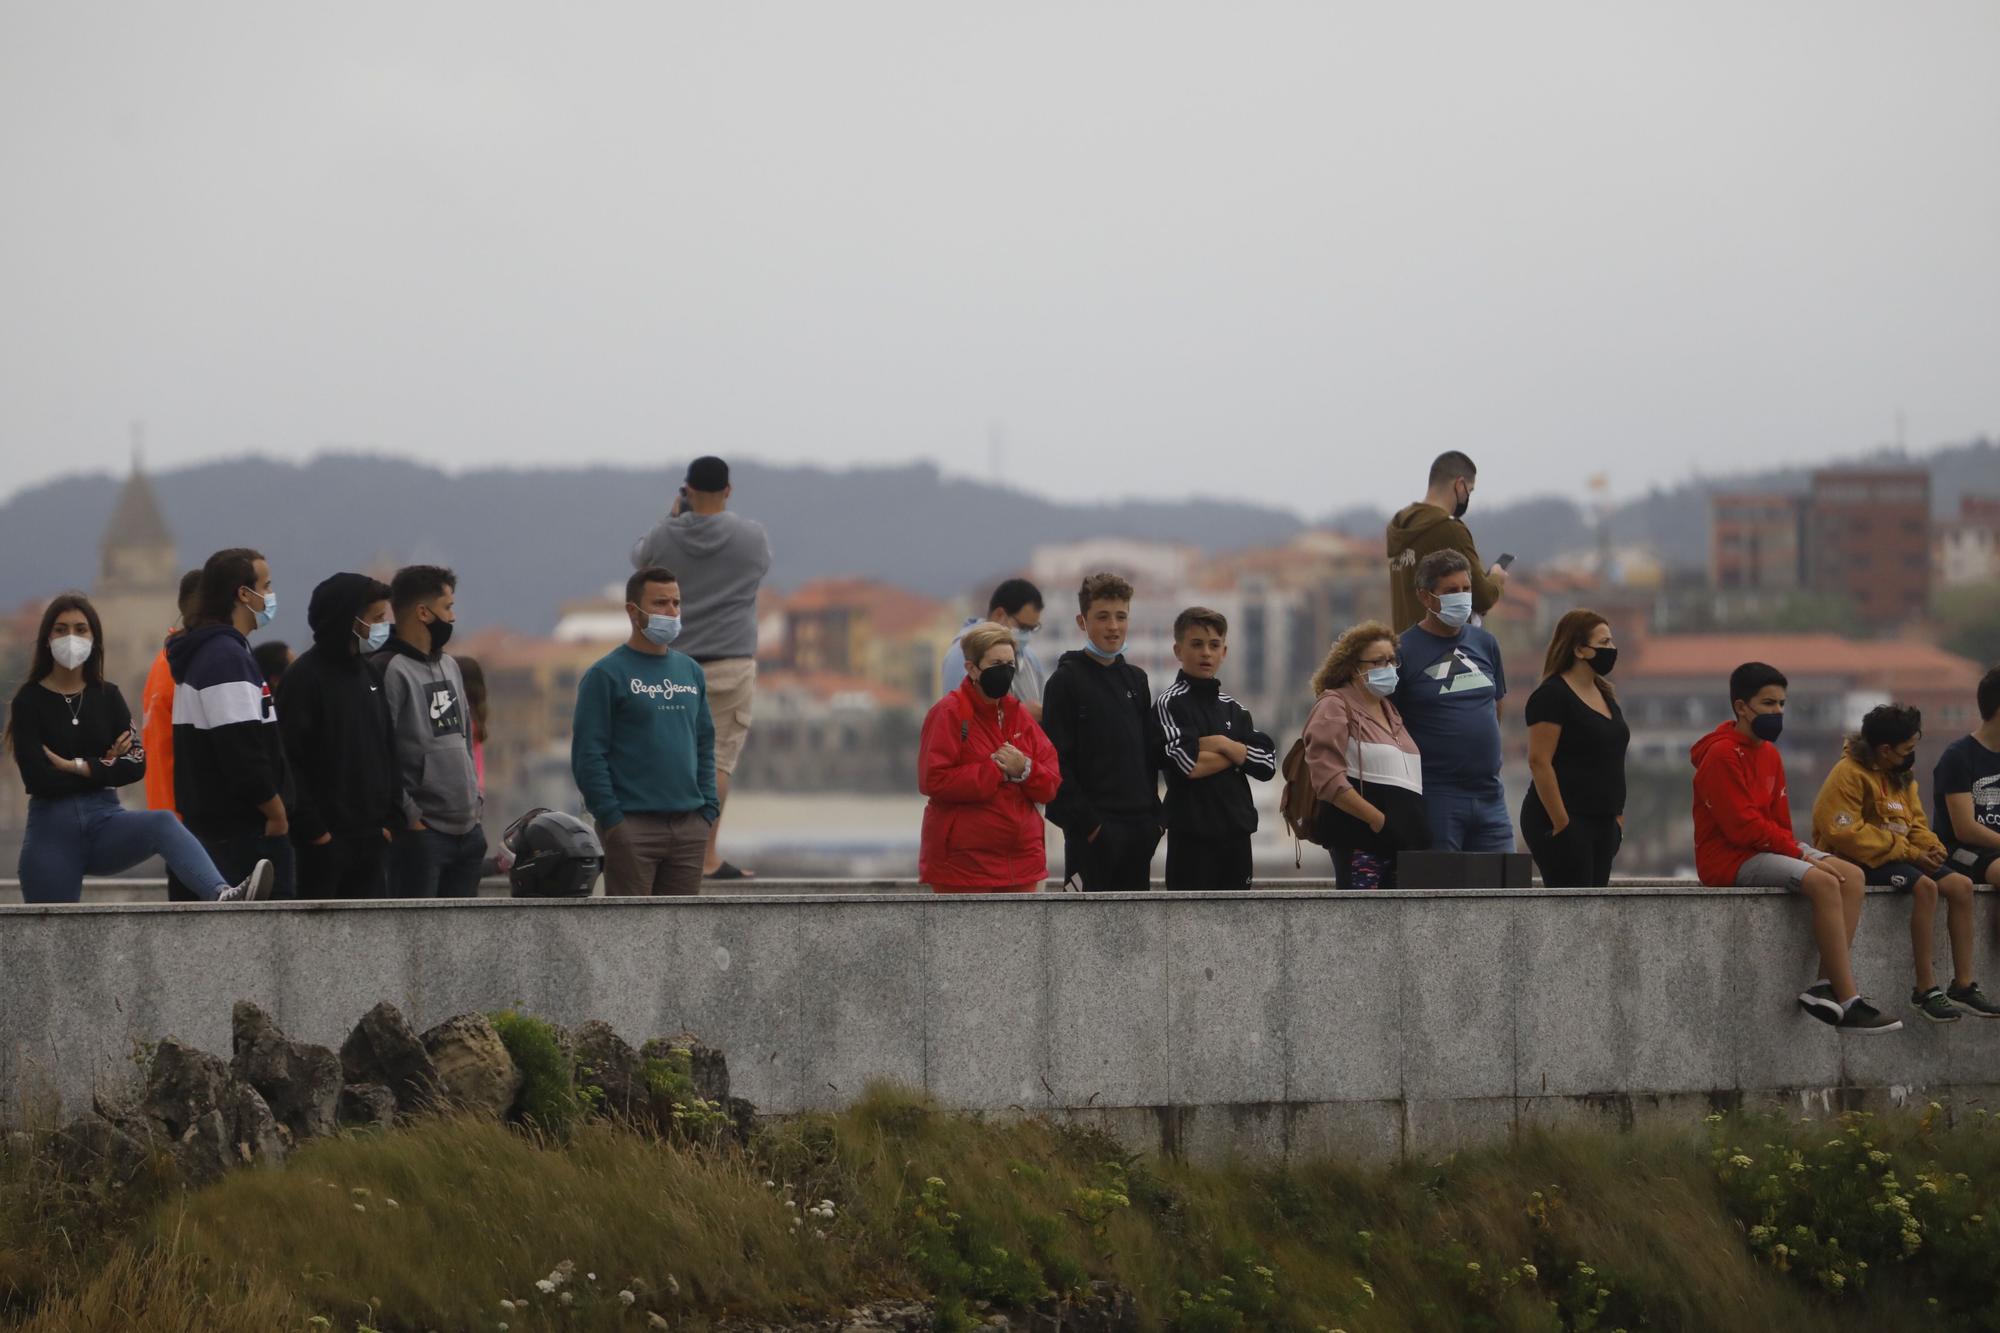 Una persona fallecida y un herido tras volcar su lancha enfrente de la costa de Gijón